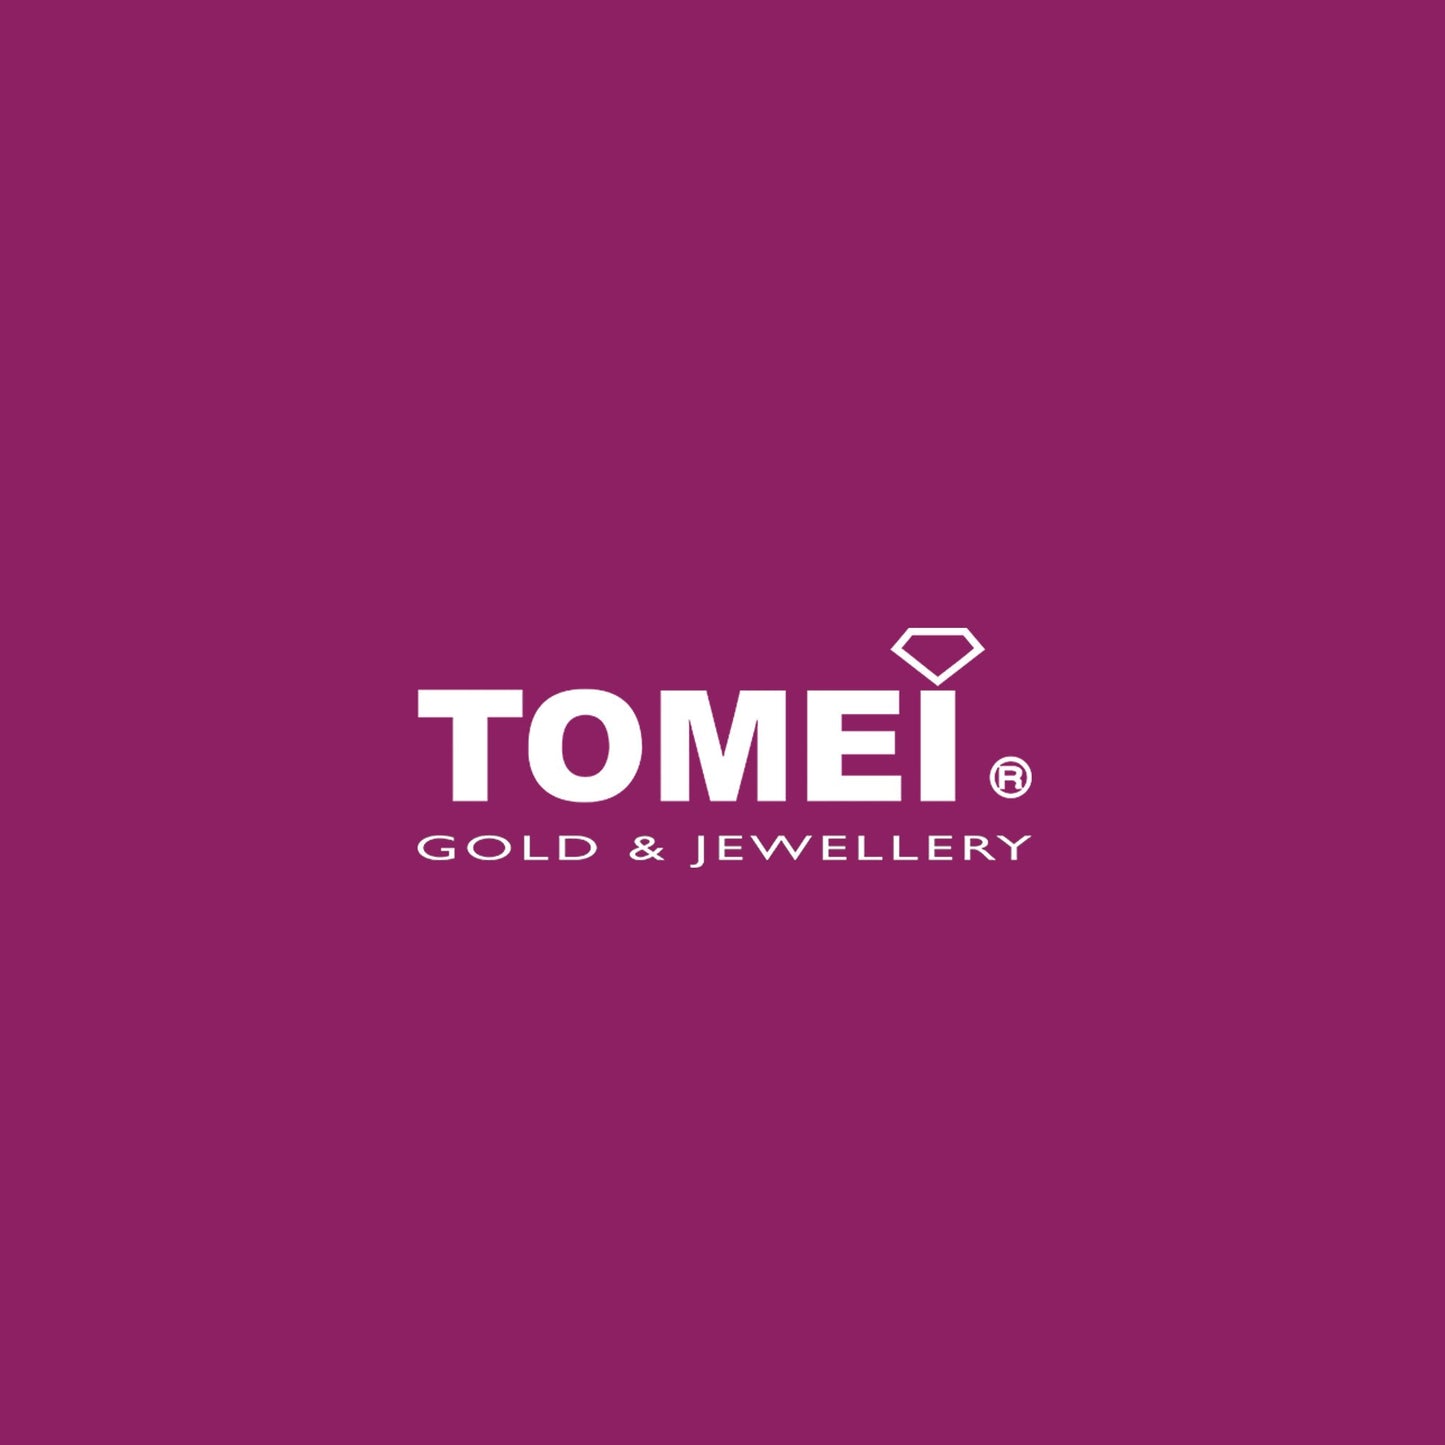 TOMEI Diamond Ring, White Gold 750 (R4925)